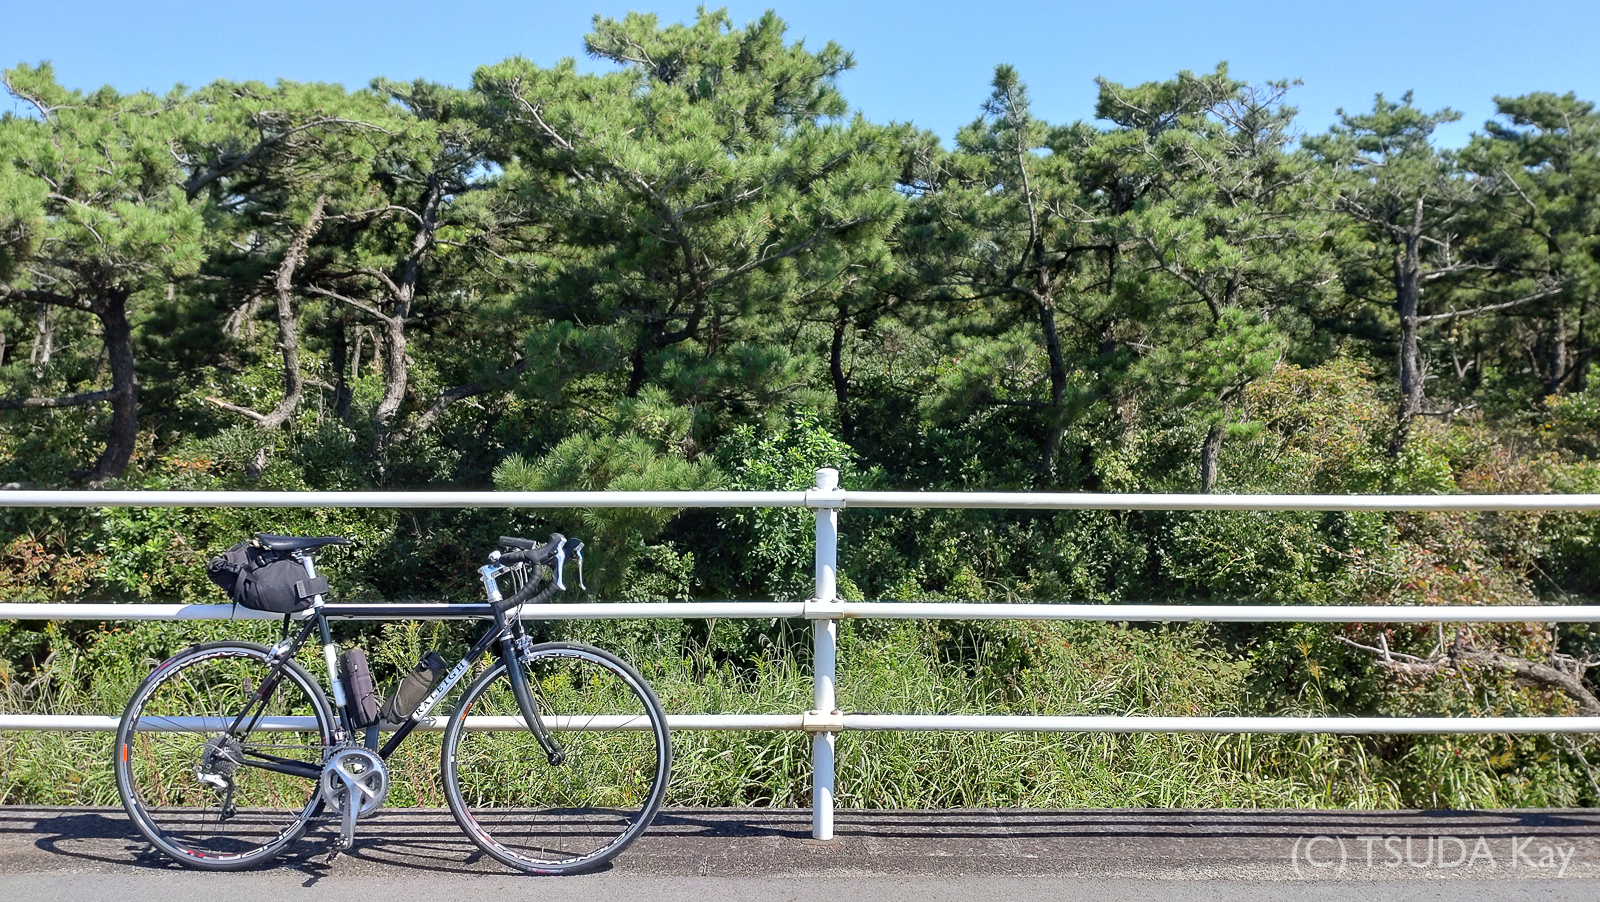 I cycled from mishima to shizuoka 26